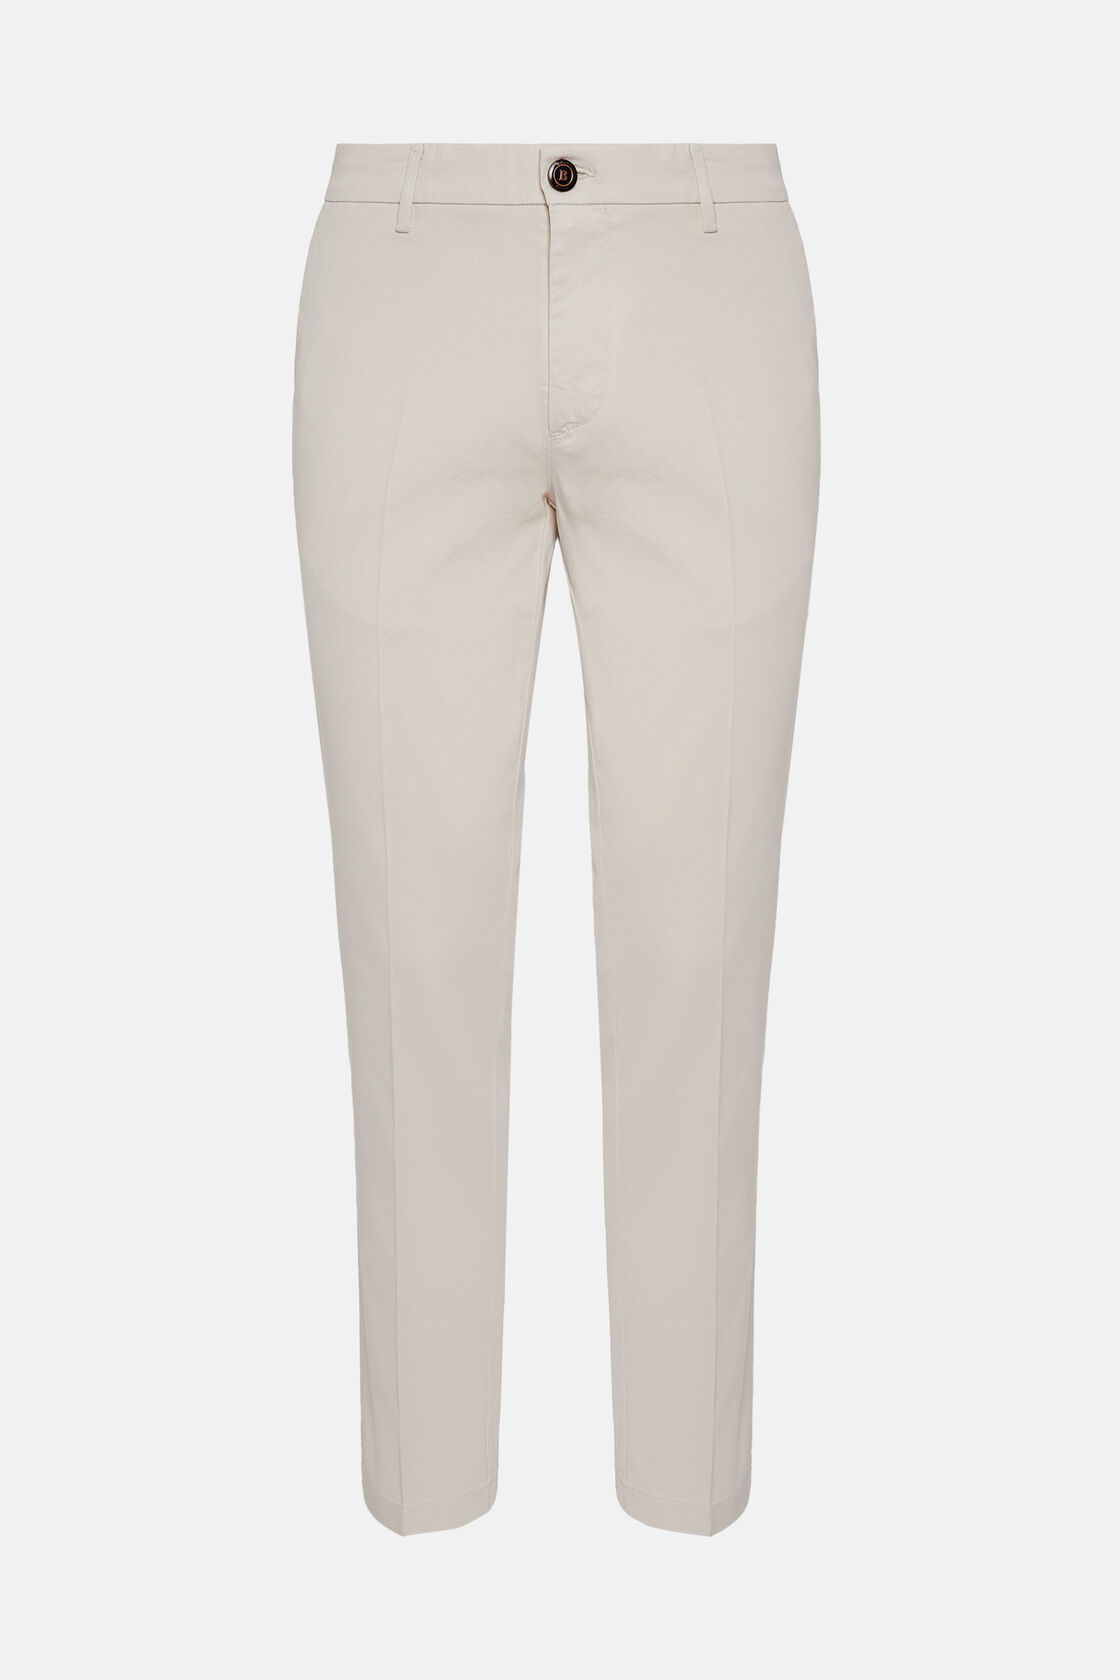 Pantalon En Coton Tencel Extensible, Crème, hi-res